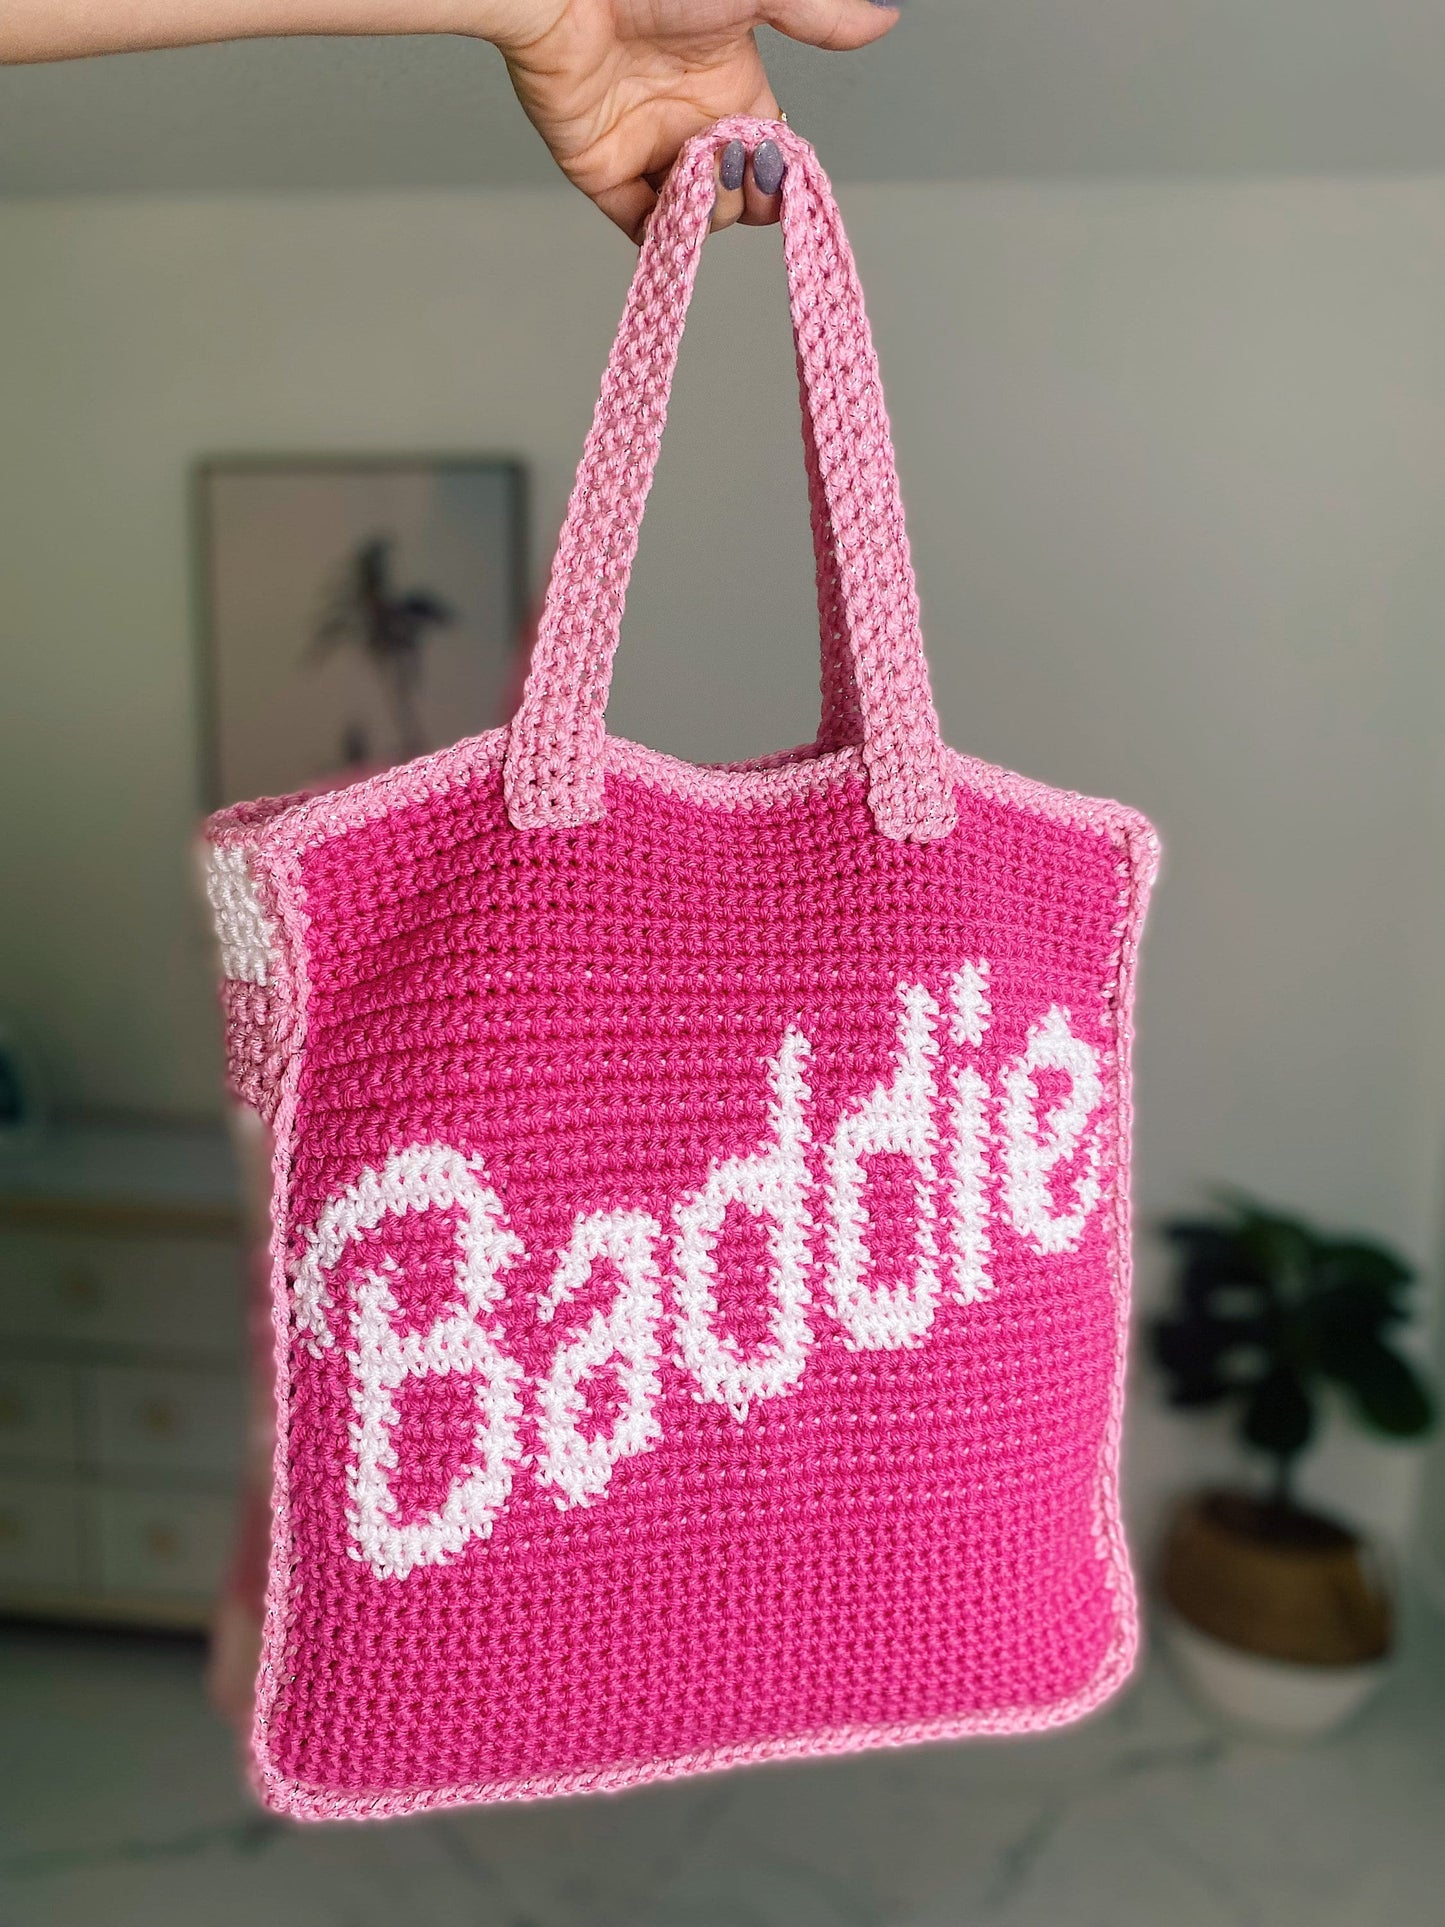 CROCHET PATTERN - Baddie Barbie Bag Crochet Pattern